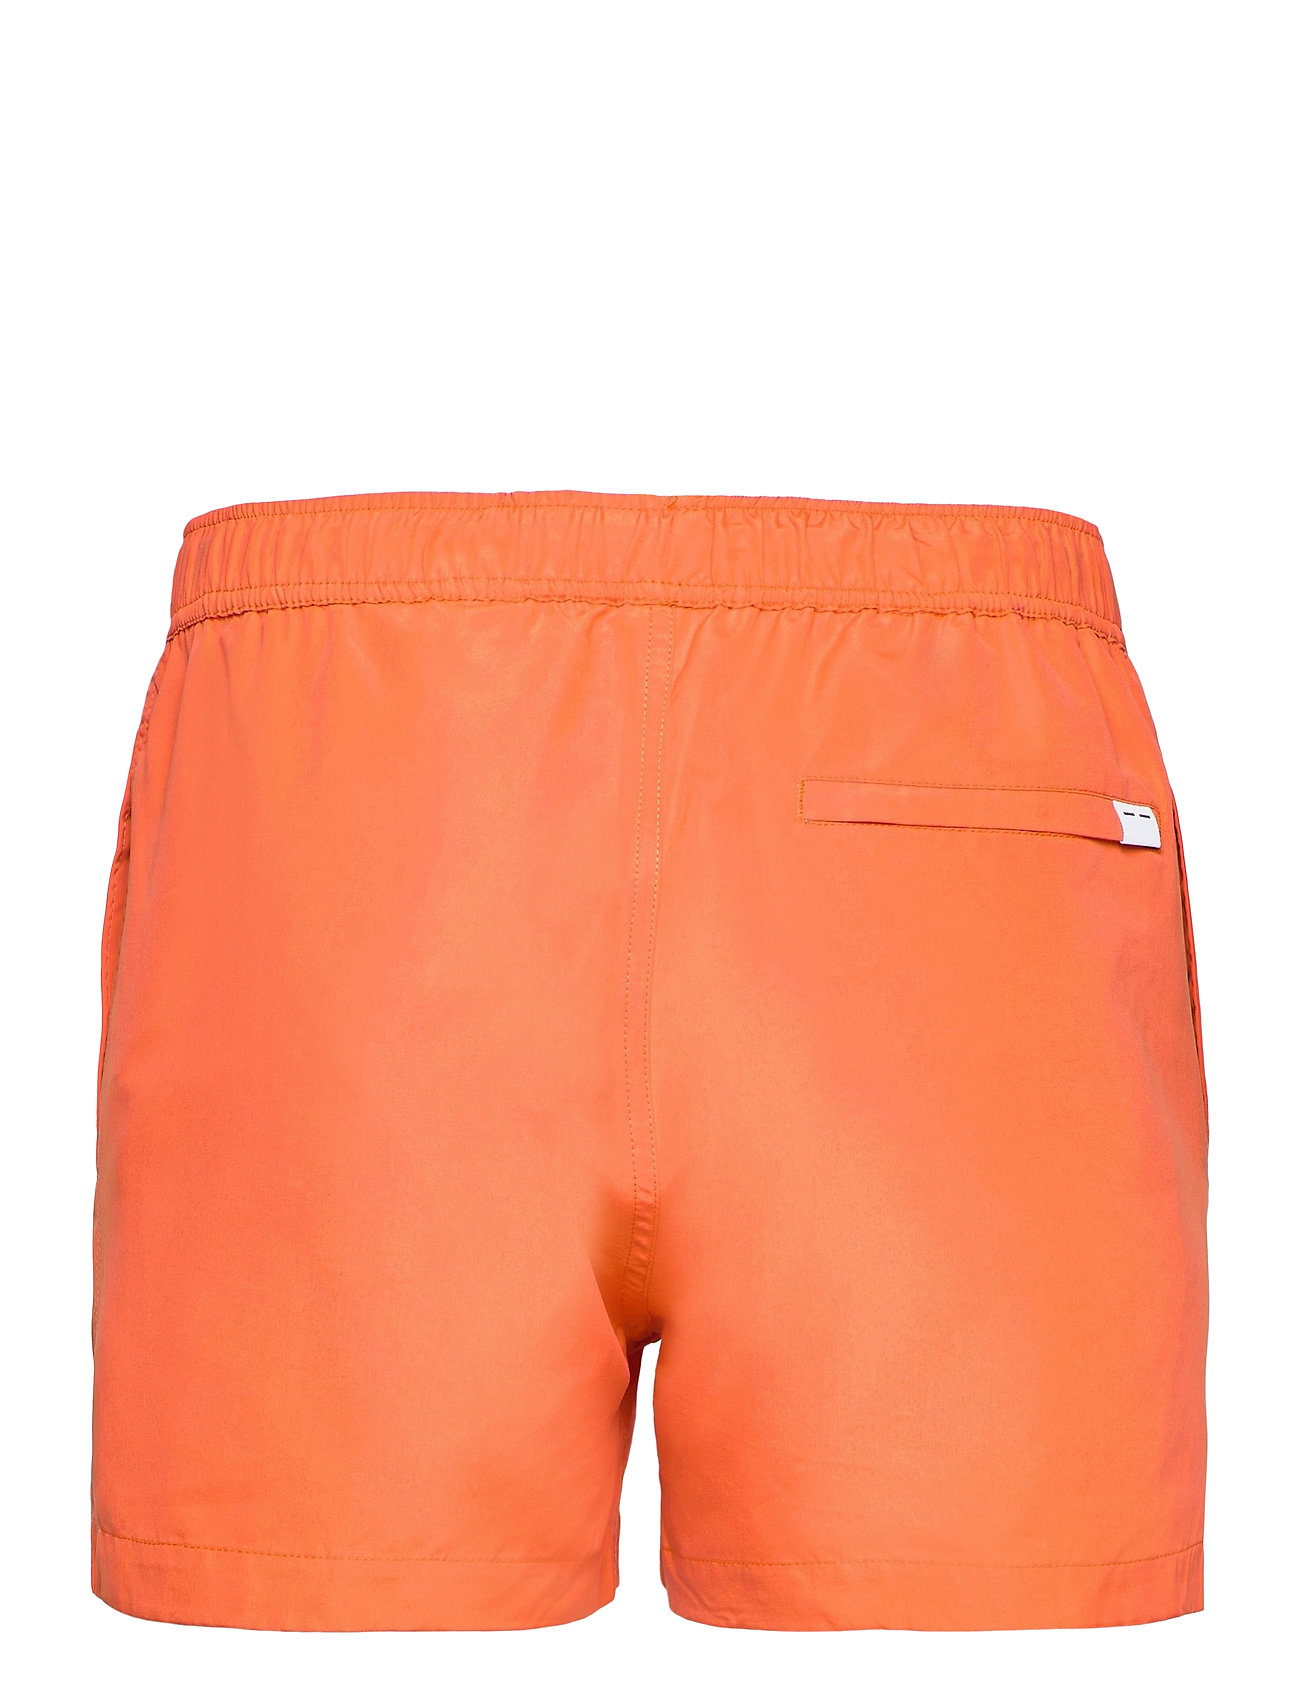 Mason Swim Shorts 13082 Badeshorts Orange Samsøe Samsøe